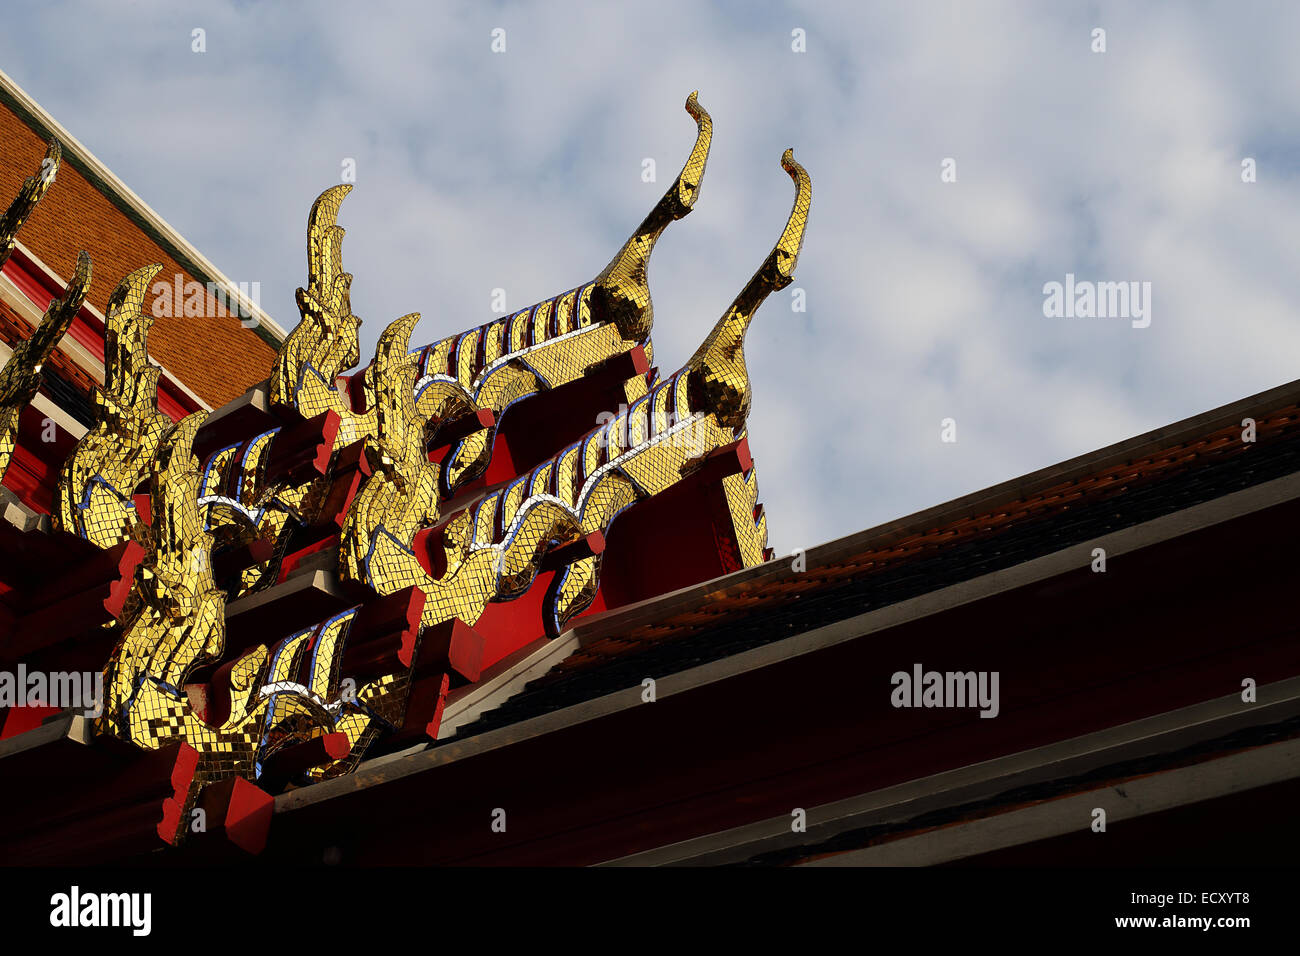 Motif de l'Église le toit thaï Wat Pho temple, Bangkok, Thaïlande Banque D'Images